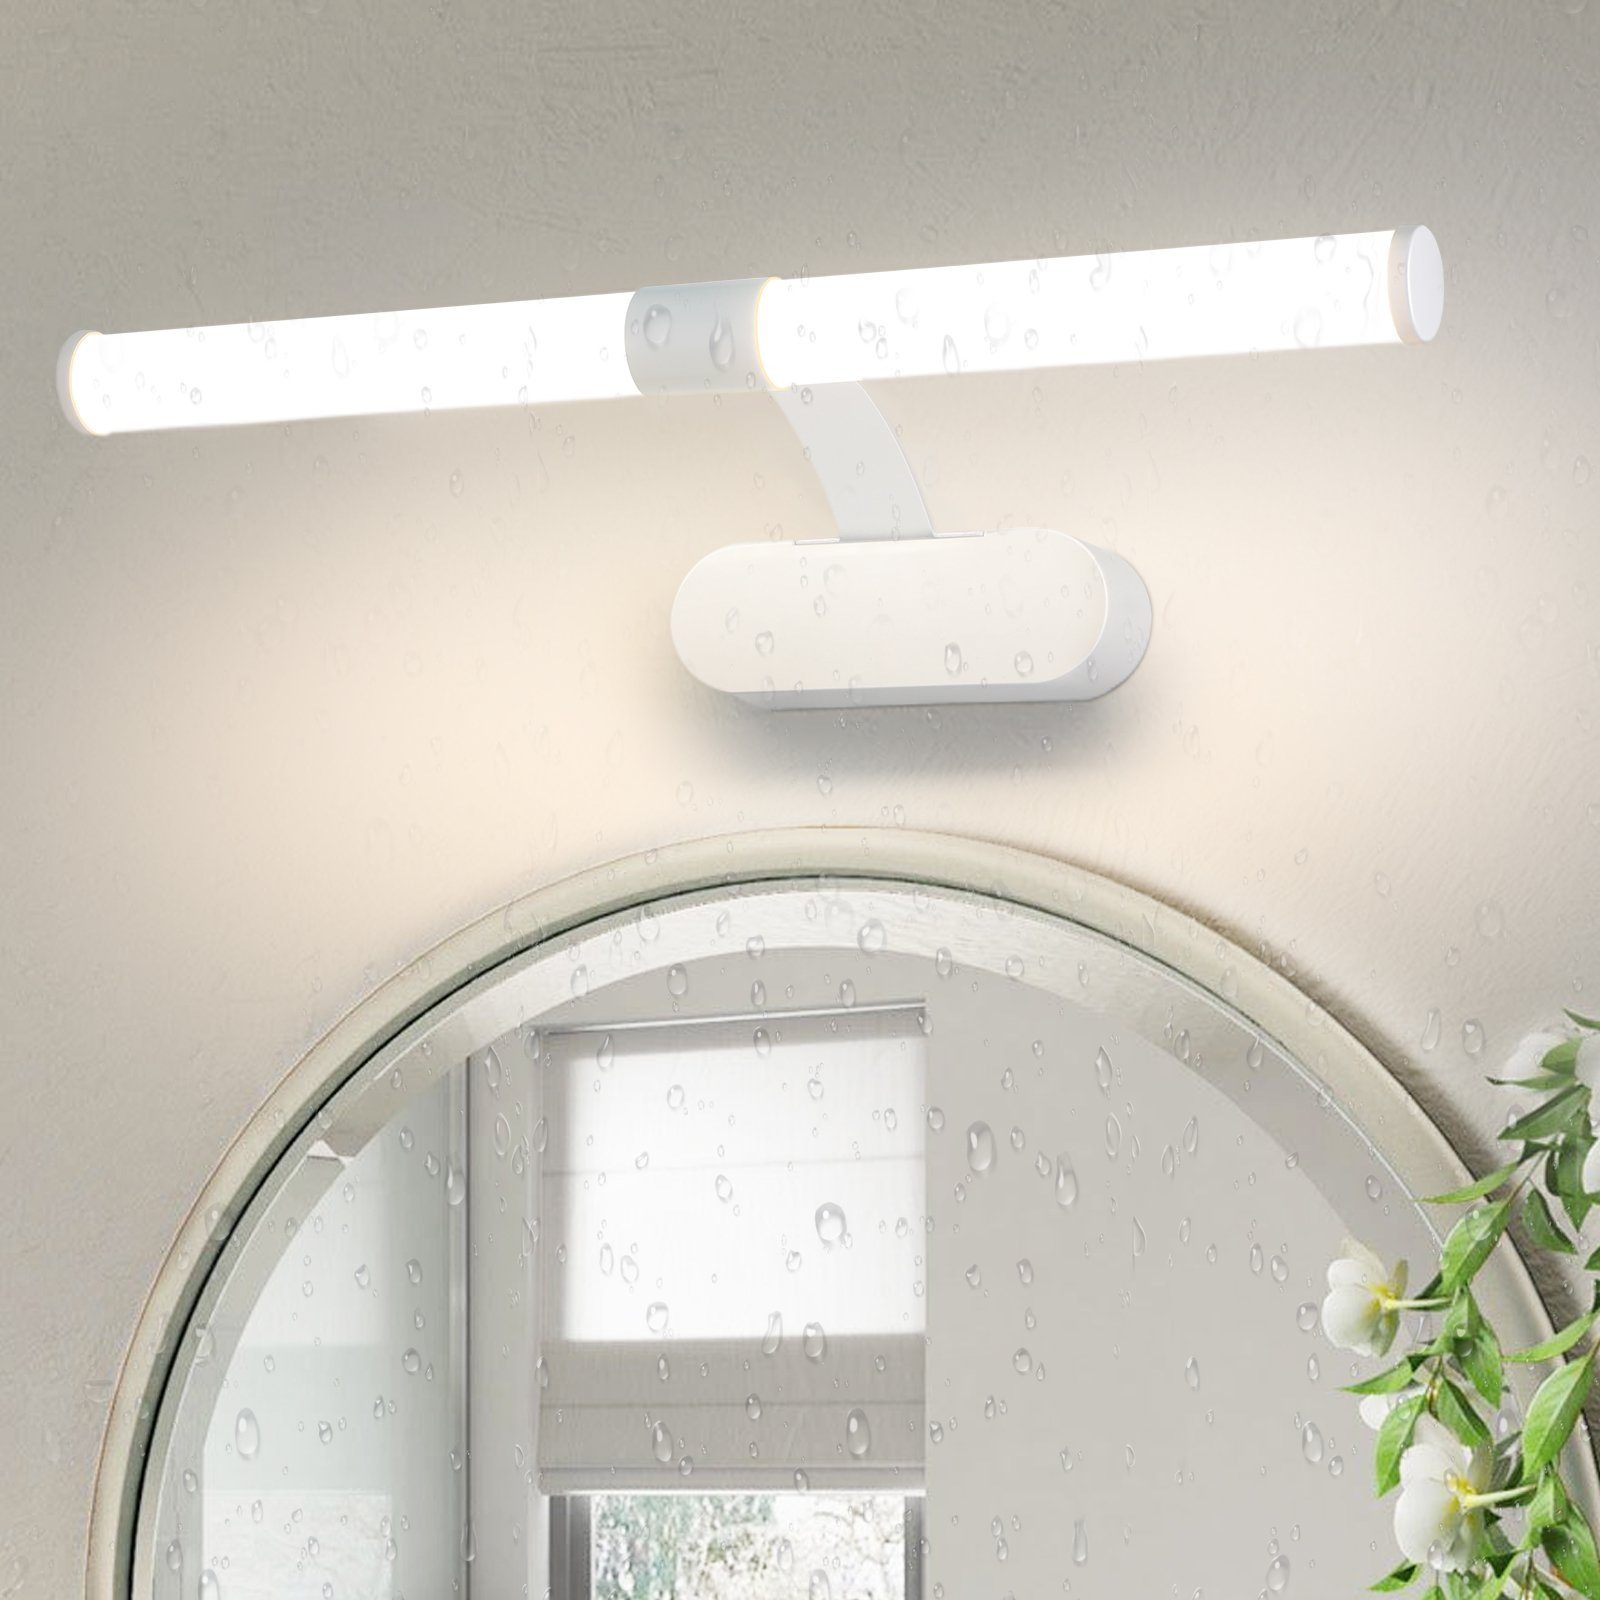 Nettlife LED Spiegelleuchte Schwarz 40cm fest integriert, Keller Badezimmer Wandleuchte 6W, IP44, Badlampe, LED Badleuchte Neutralweiß, Wasserdicht für Wandlampe Küche Bad Badschrank, Spiegellampe